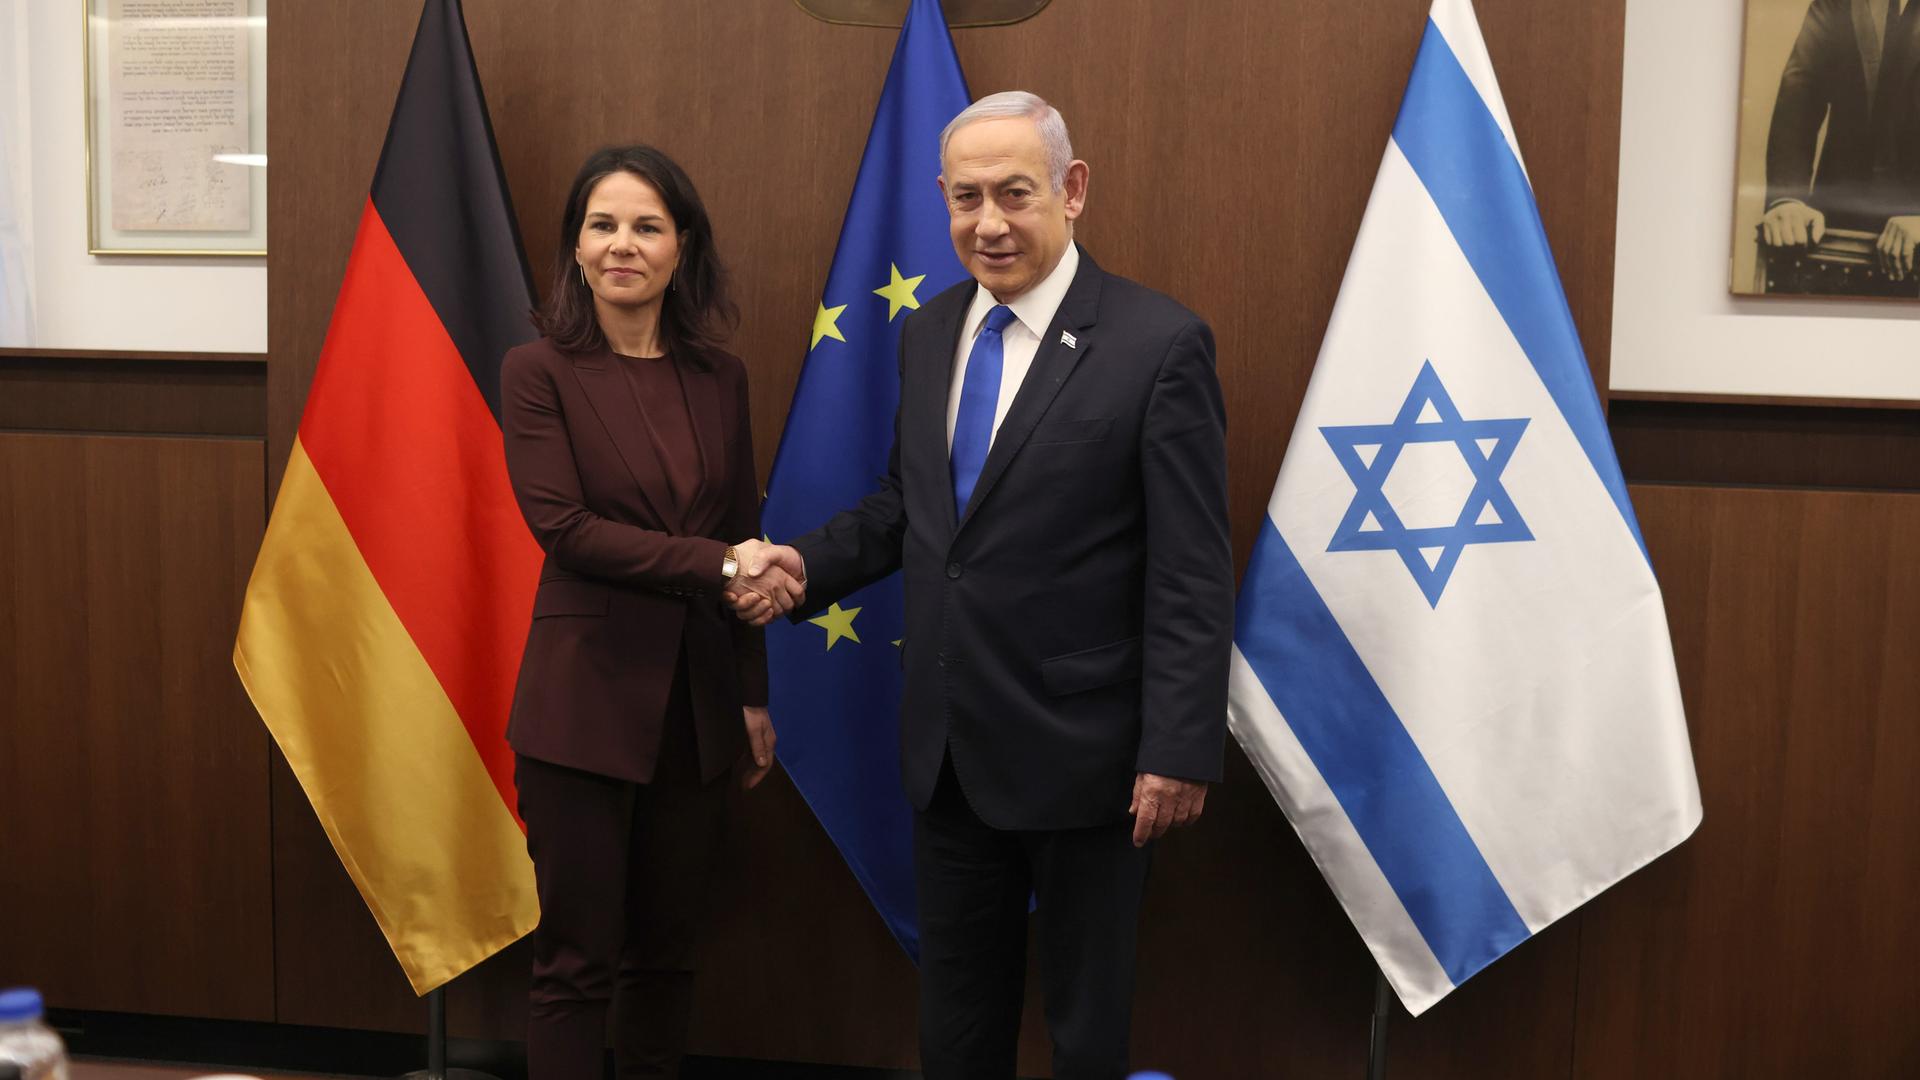 Bundesaußenministerin Baerbock (links) und Israels Ministerpräsident Netanjahu (rechts) stehen vor den Flaggen Deutschlands, der EU und Israels. Sie schütteln sich die Hände.